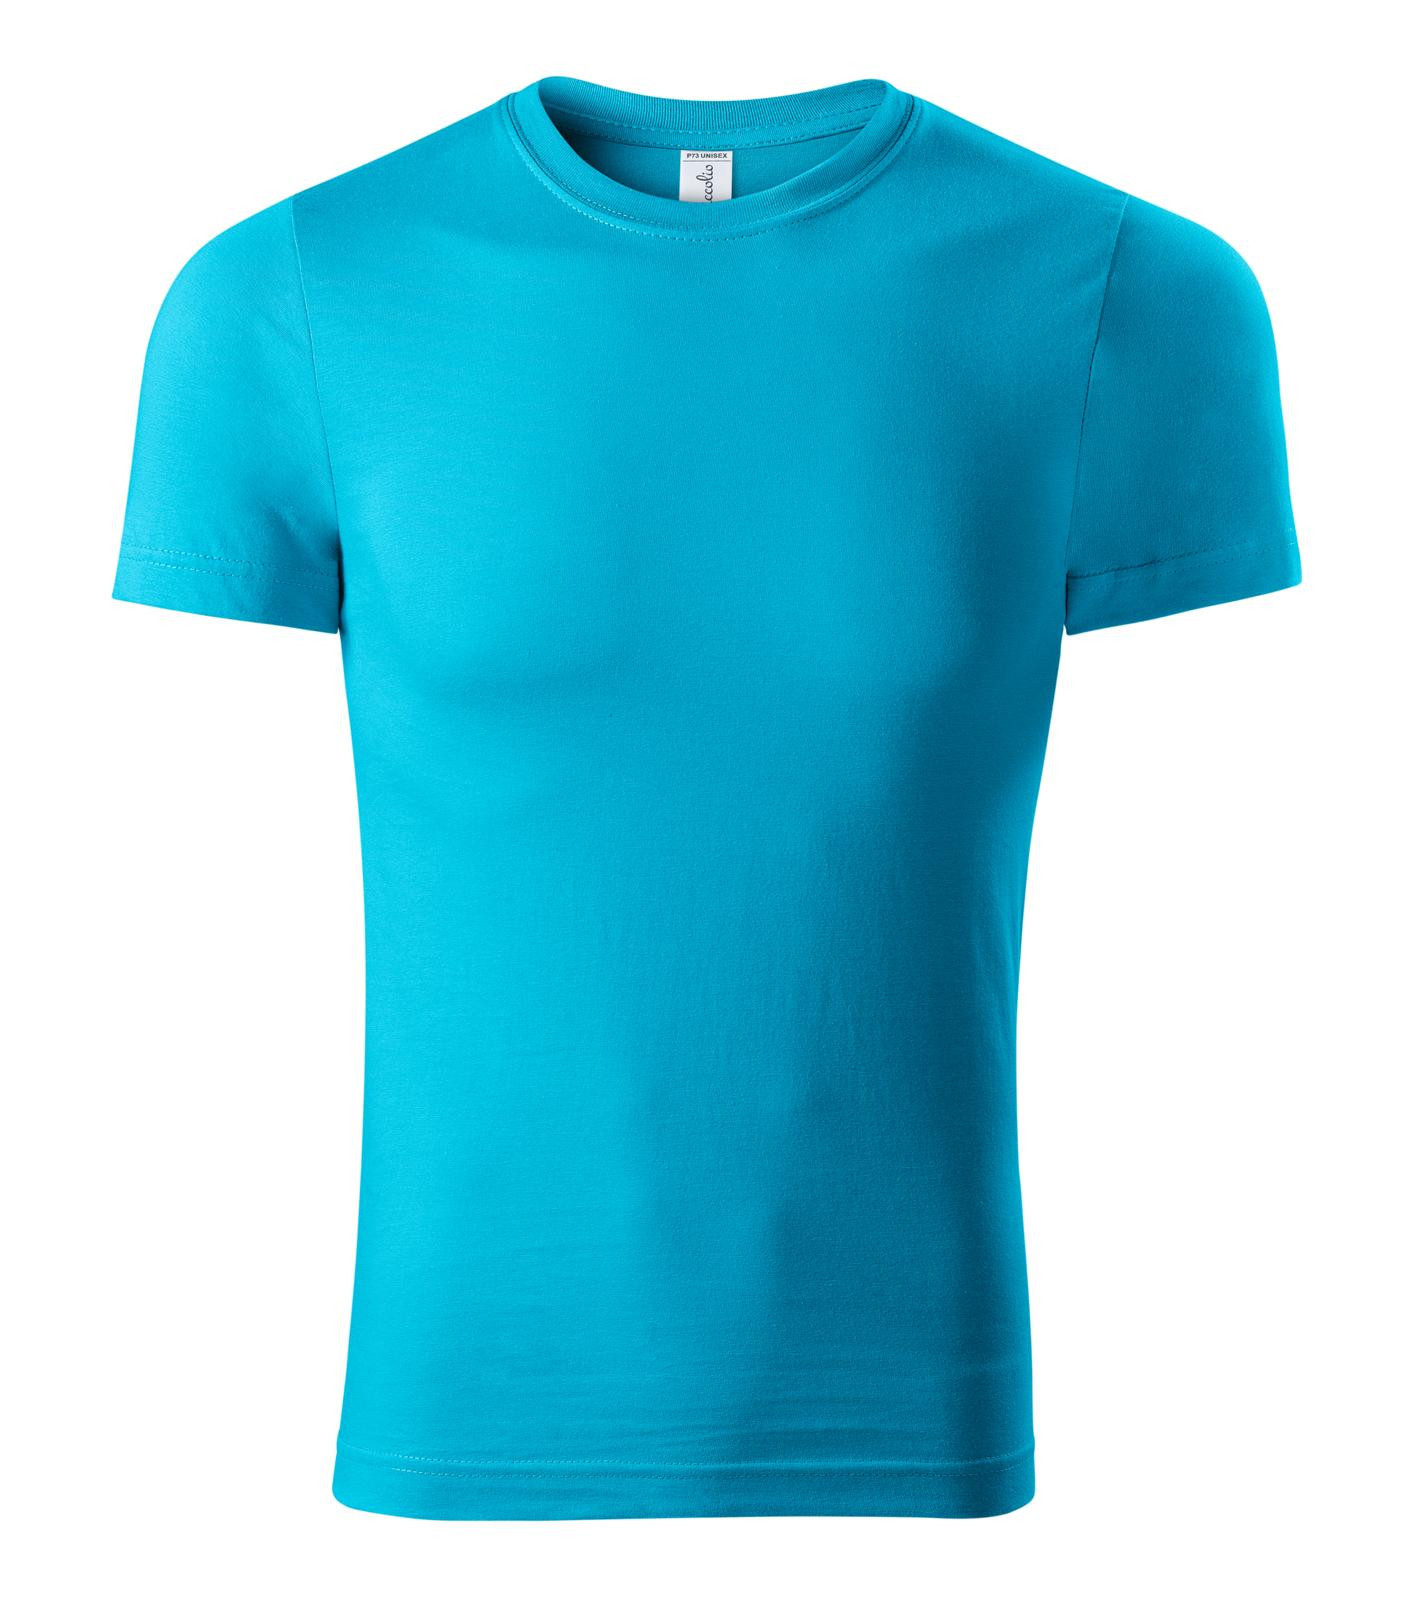 Unisex tričko Piccolio Paint P73 - veľkosť: M, farba: tyrkysová